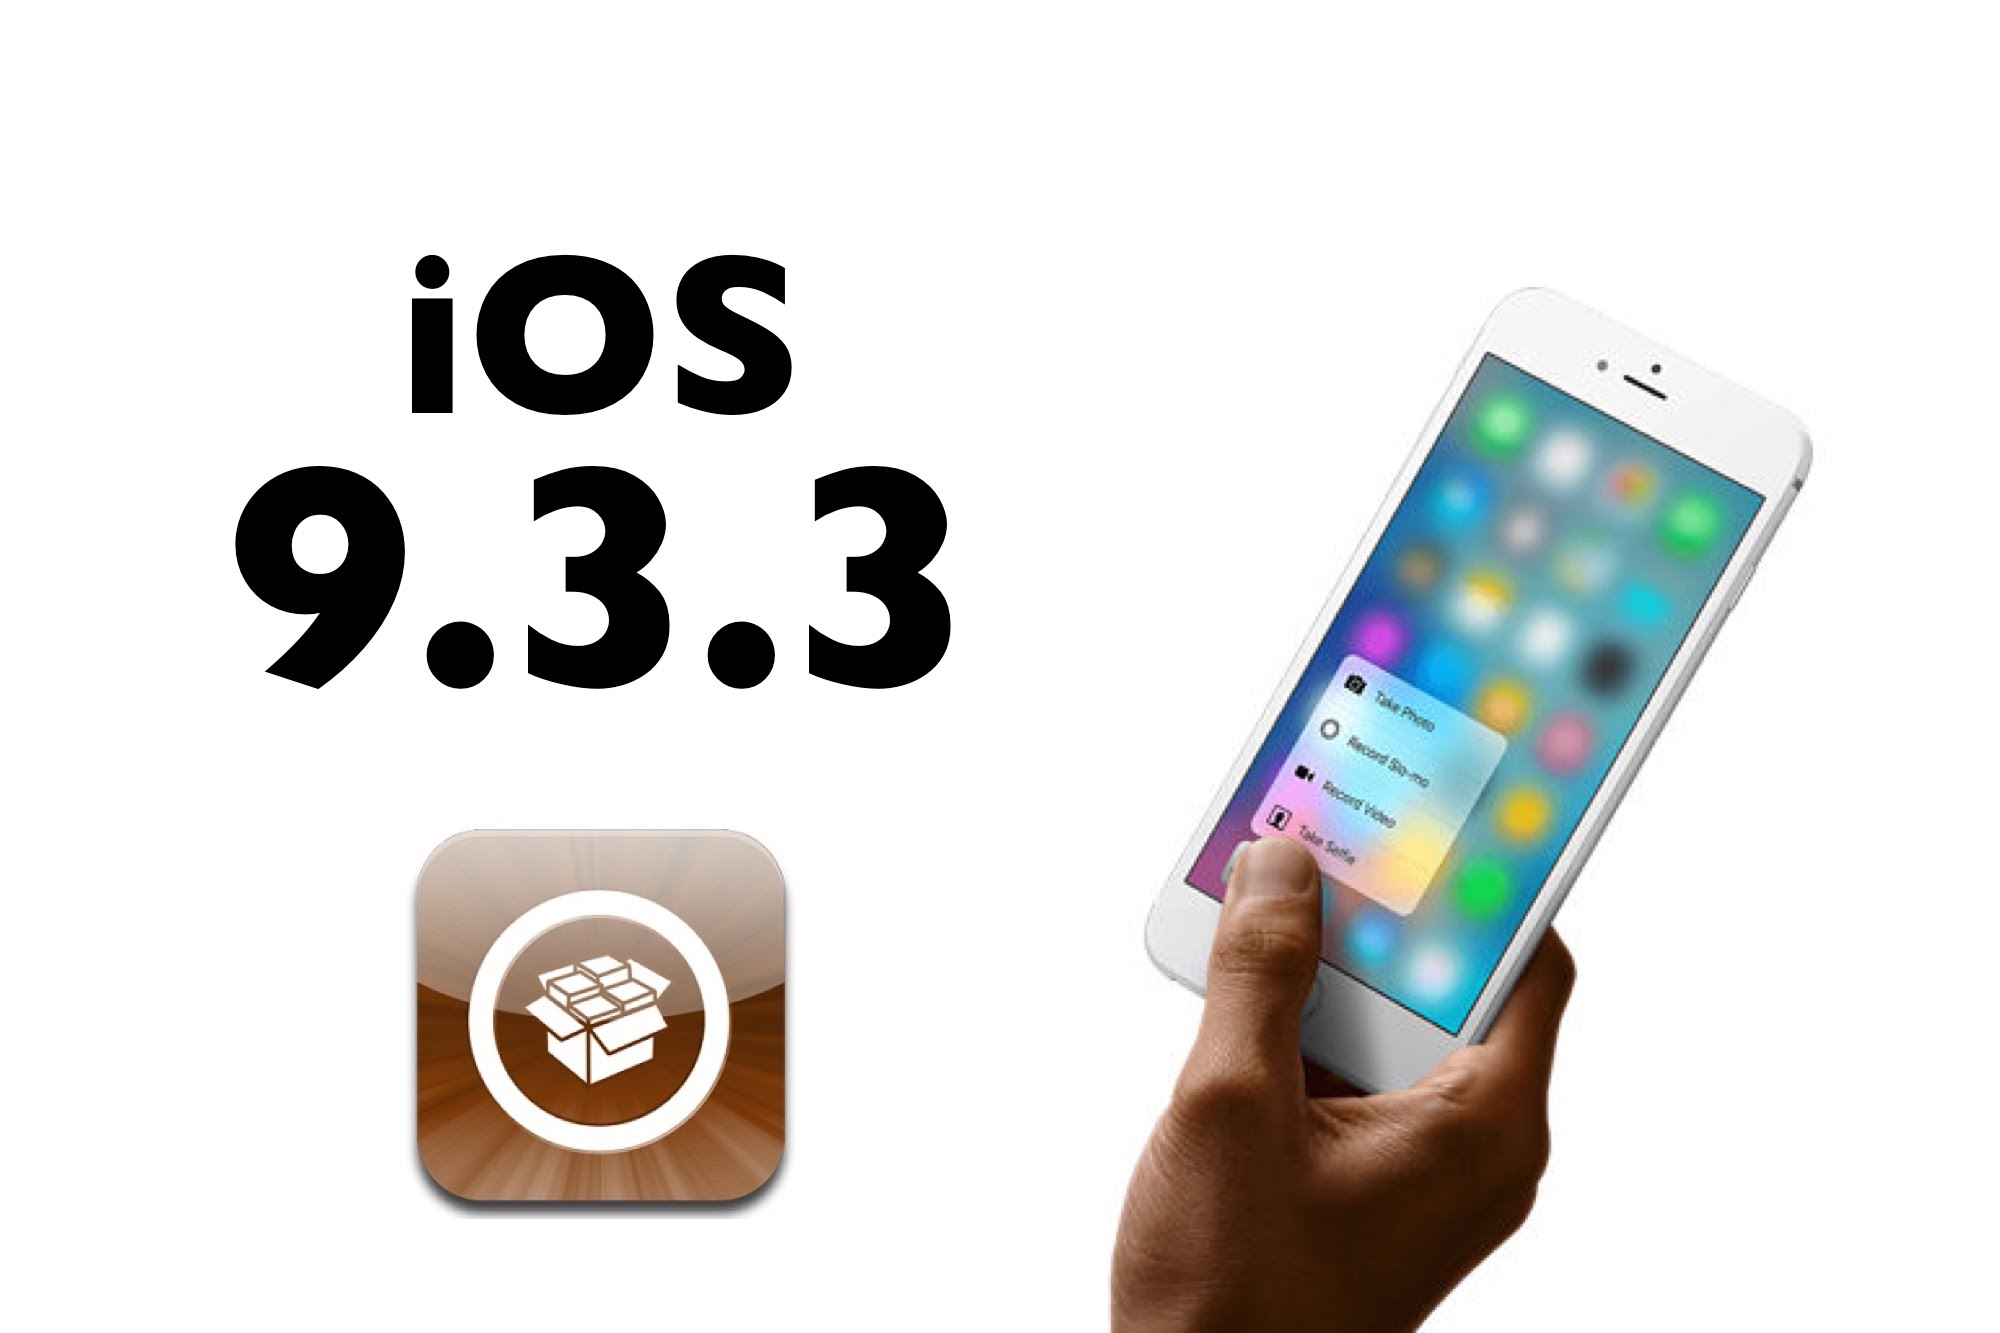 Jailbreak iOS 9.3.3 per iPhone 6S, iPhone 6 ed iPhone 5S